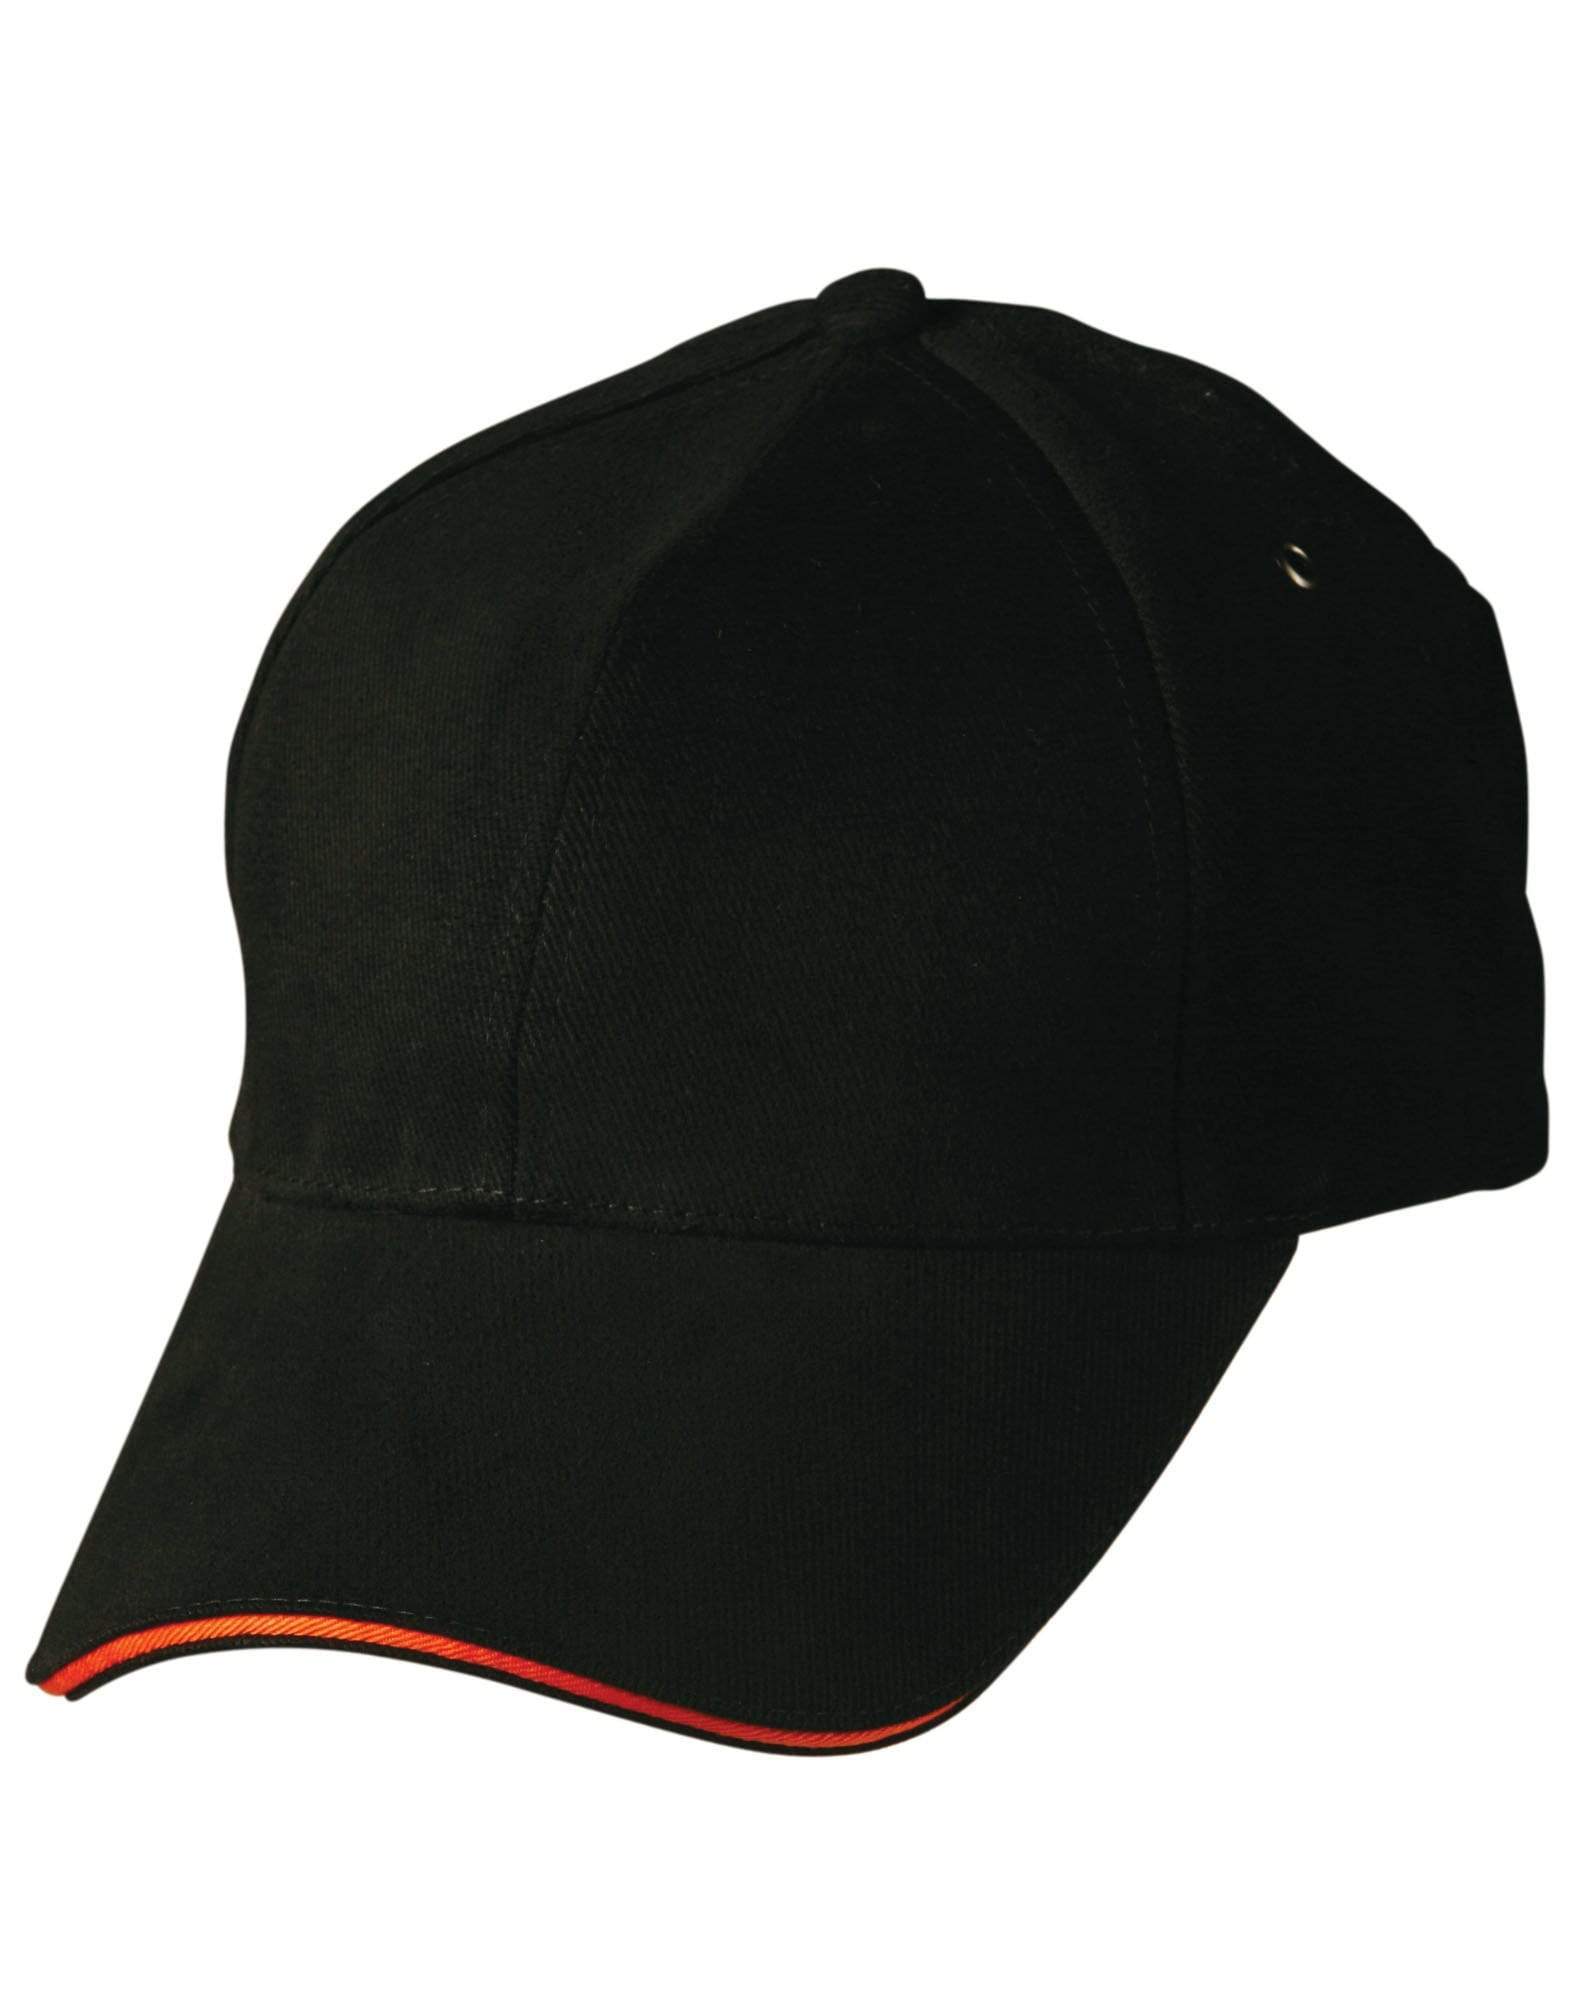 Sandwich Peak Cap Ch18 Active Wear Winning Spirit Black/ Orange One size fits most 